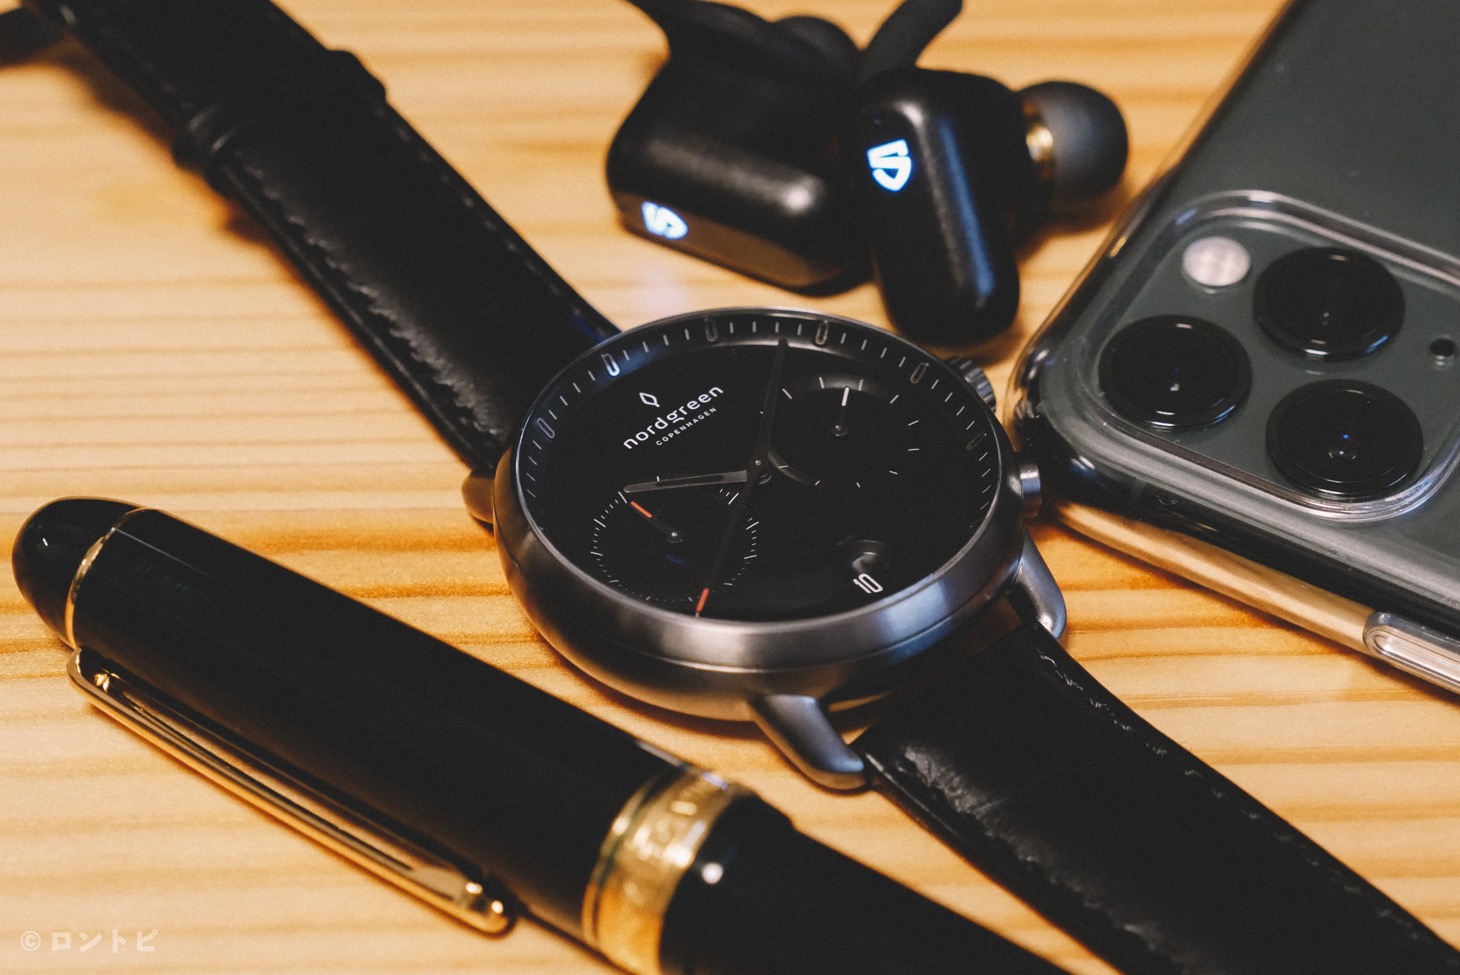 Nordgreen】北欧デザインのメンズ腕時計「Pioneer（クロノグラフ）」がシンプルでクール！ミニマムなデザインが物欲を刺激する！ | ロントピ